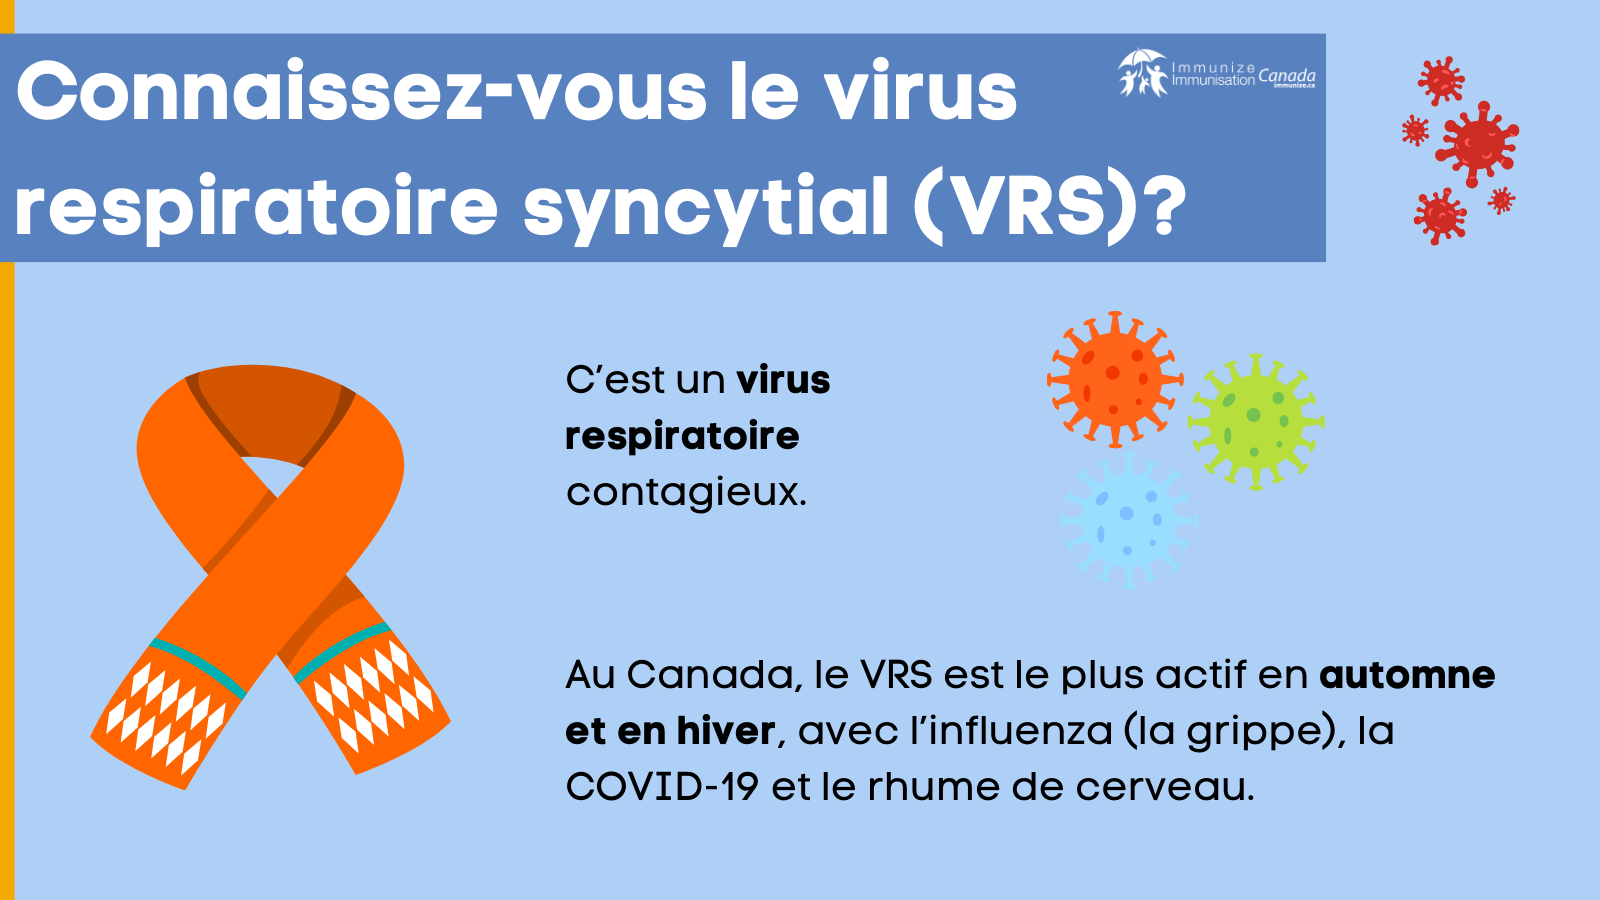 Connaissez-vous le virus respiratoire syncytial (VRS)? - image 5 pour Twitter